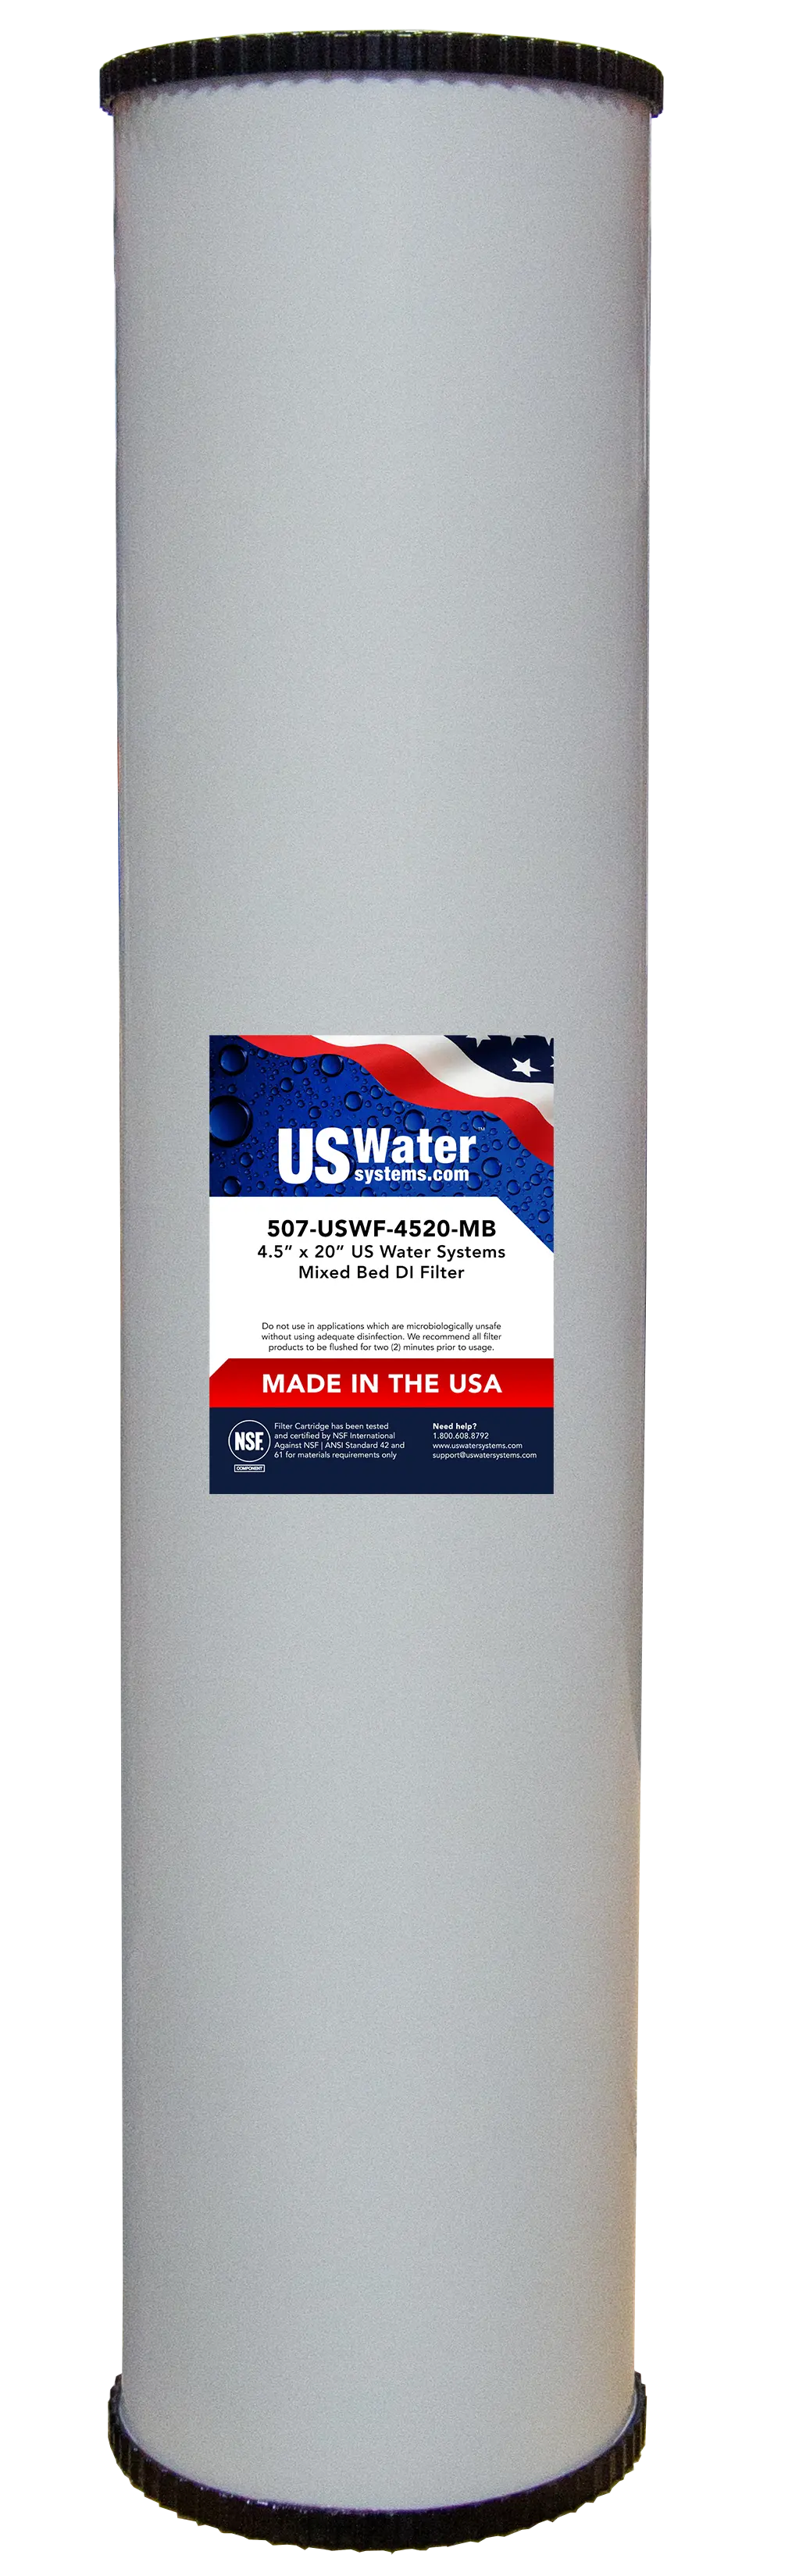 US Water DI Resin Cartridge  4.5" x 20" 1.5 GPM | USWF-4520-MB